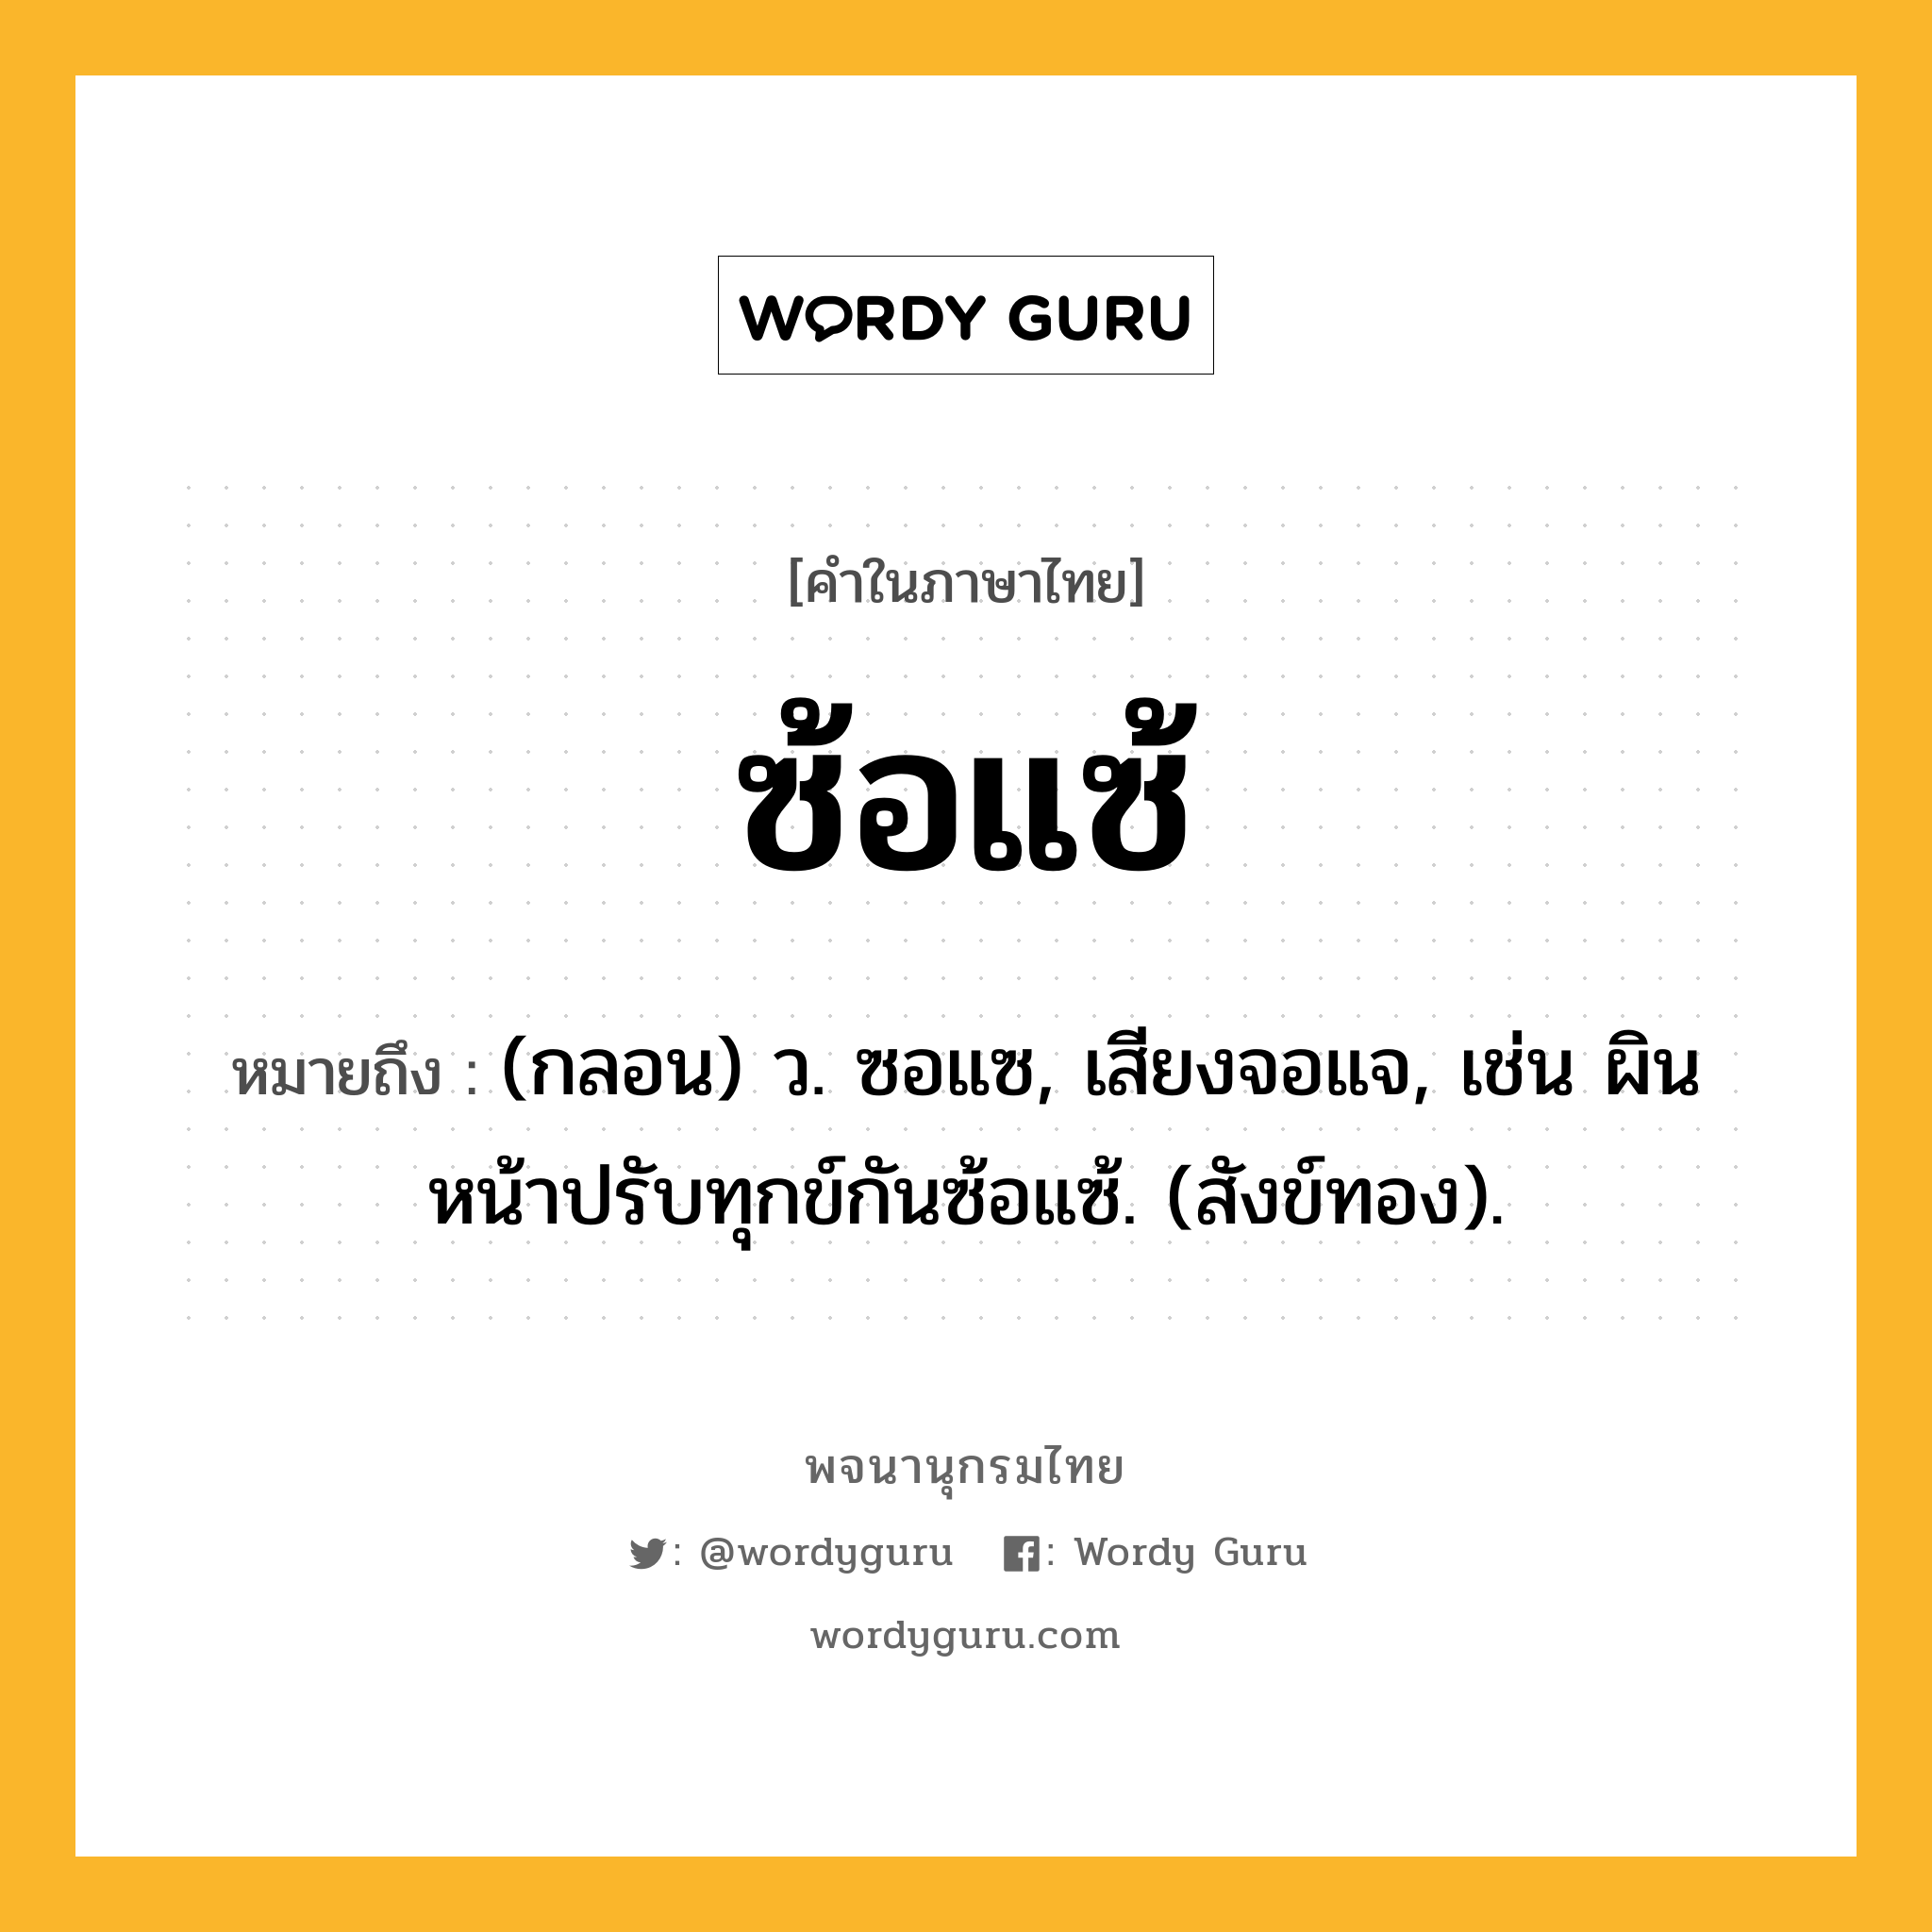 ซ้อแซ้ ความหมาย หมายถึงอะไร?, คำในภาษาไทย ซ้อแซ้ หมายถึง (กลอน) ว. ซอแซ, เสียงจอแจ, เช่น ผินหน้าปรับทุกข์กันซ้อแซ้. (สังข์ทอง).